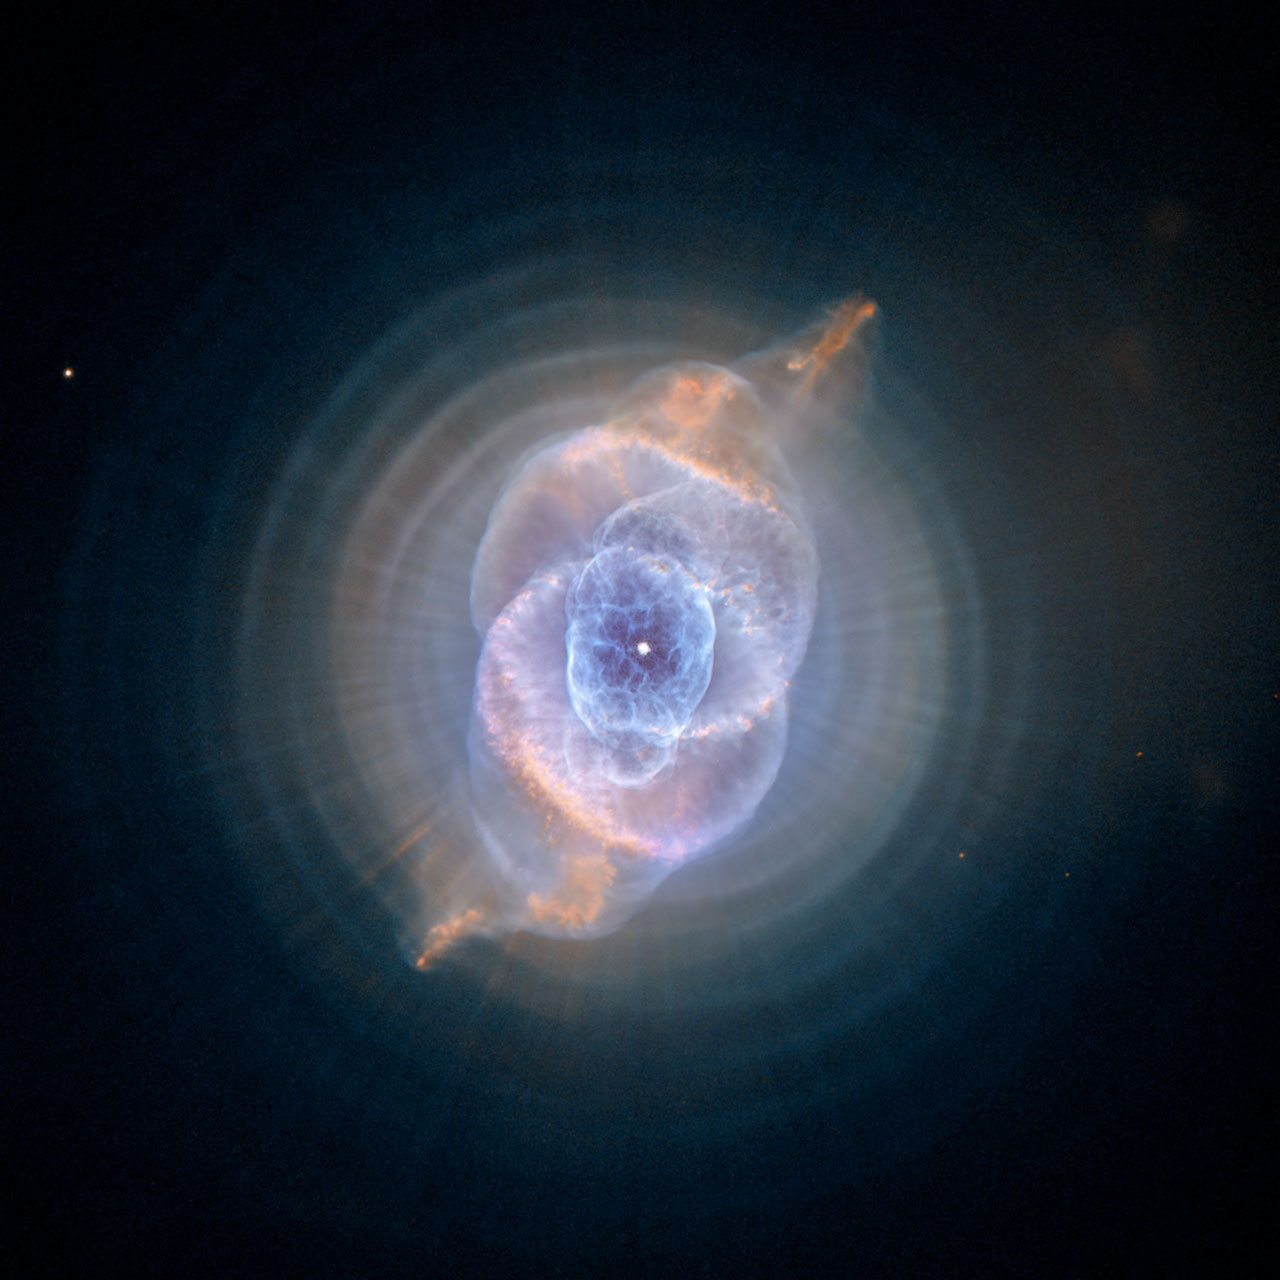 سحابی های سیاره ای که در سراسر جهان قابل مشاهده هستند، از جمله سحابی مارپیچ، سحابی چشم گربه، سحابی حلقه و سحابی حباب.